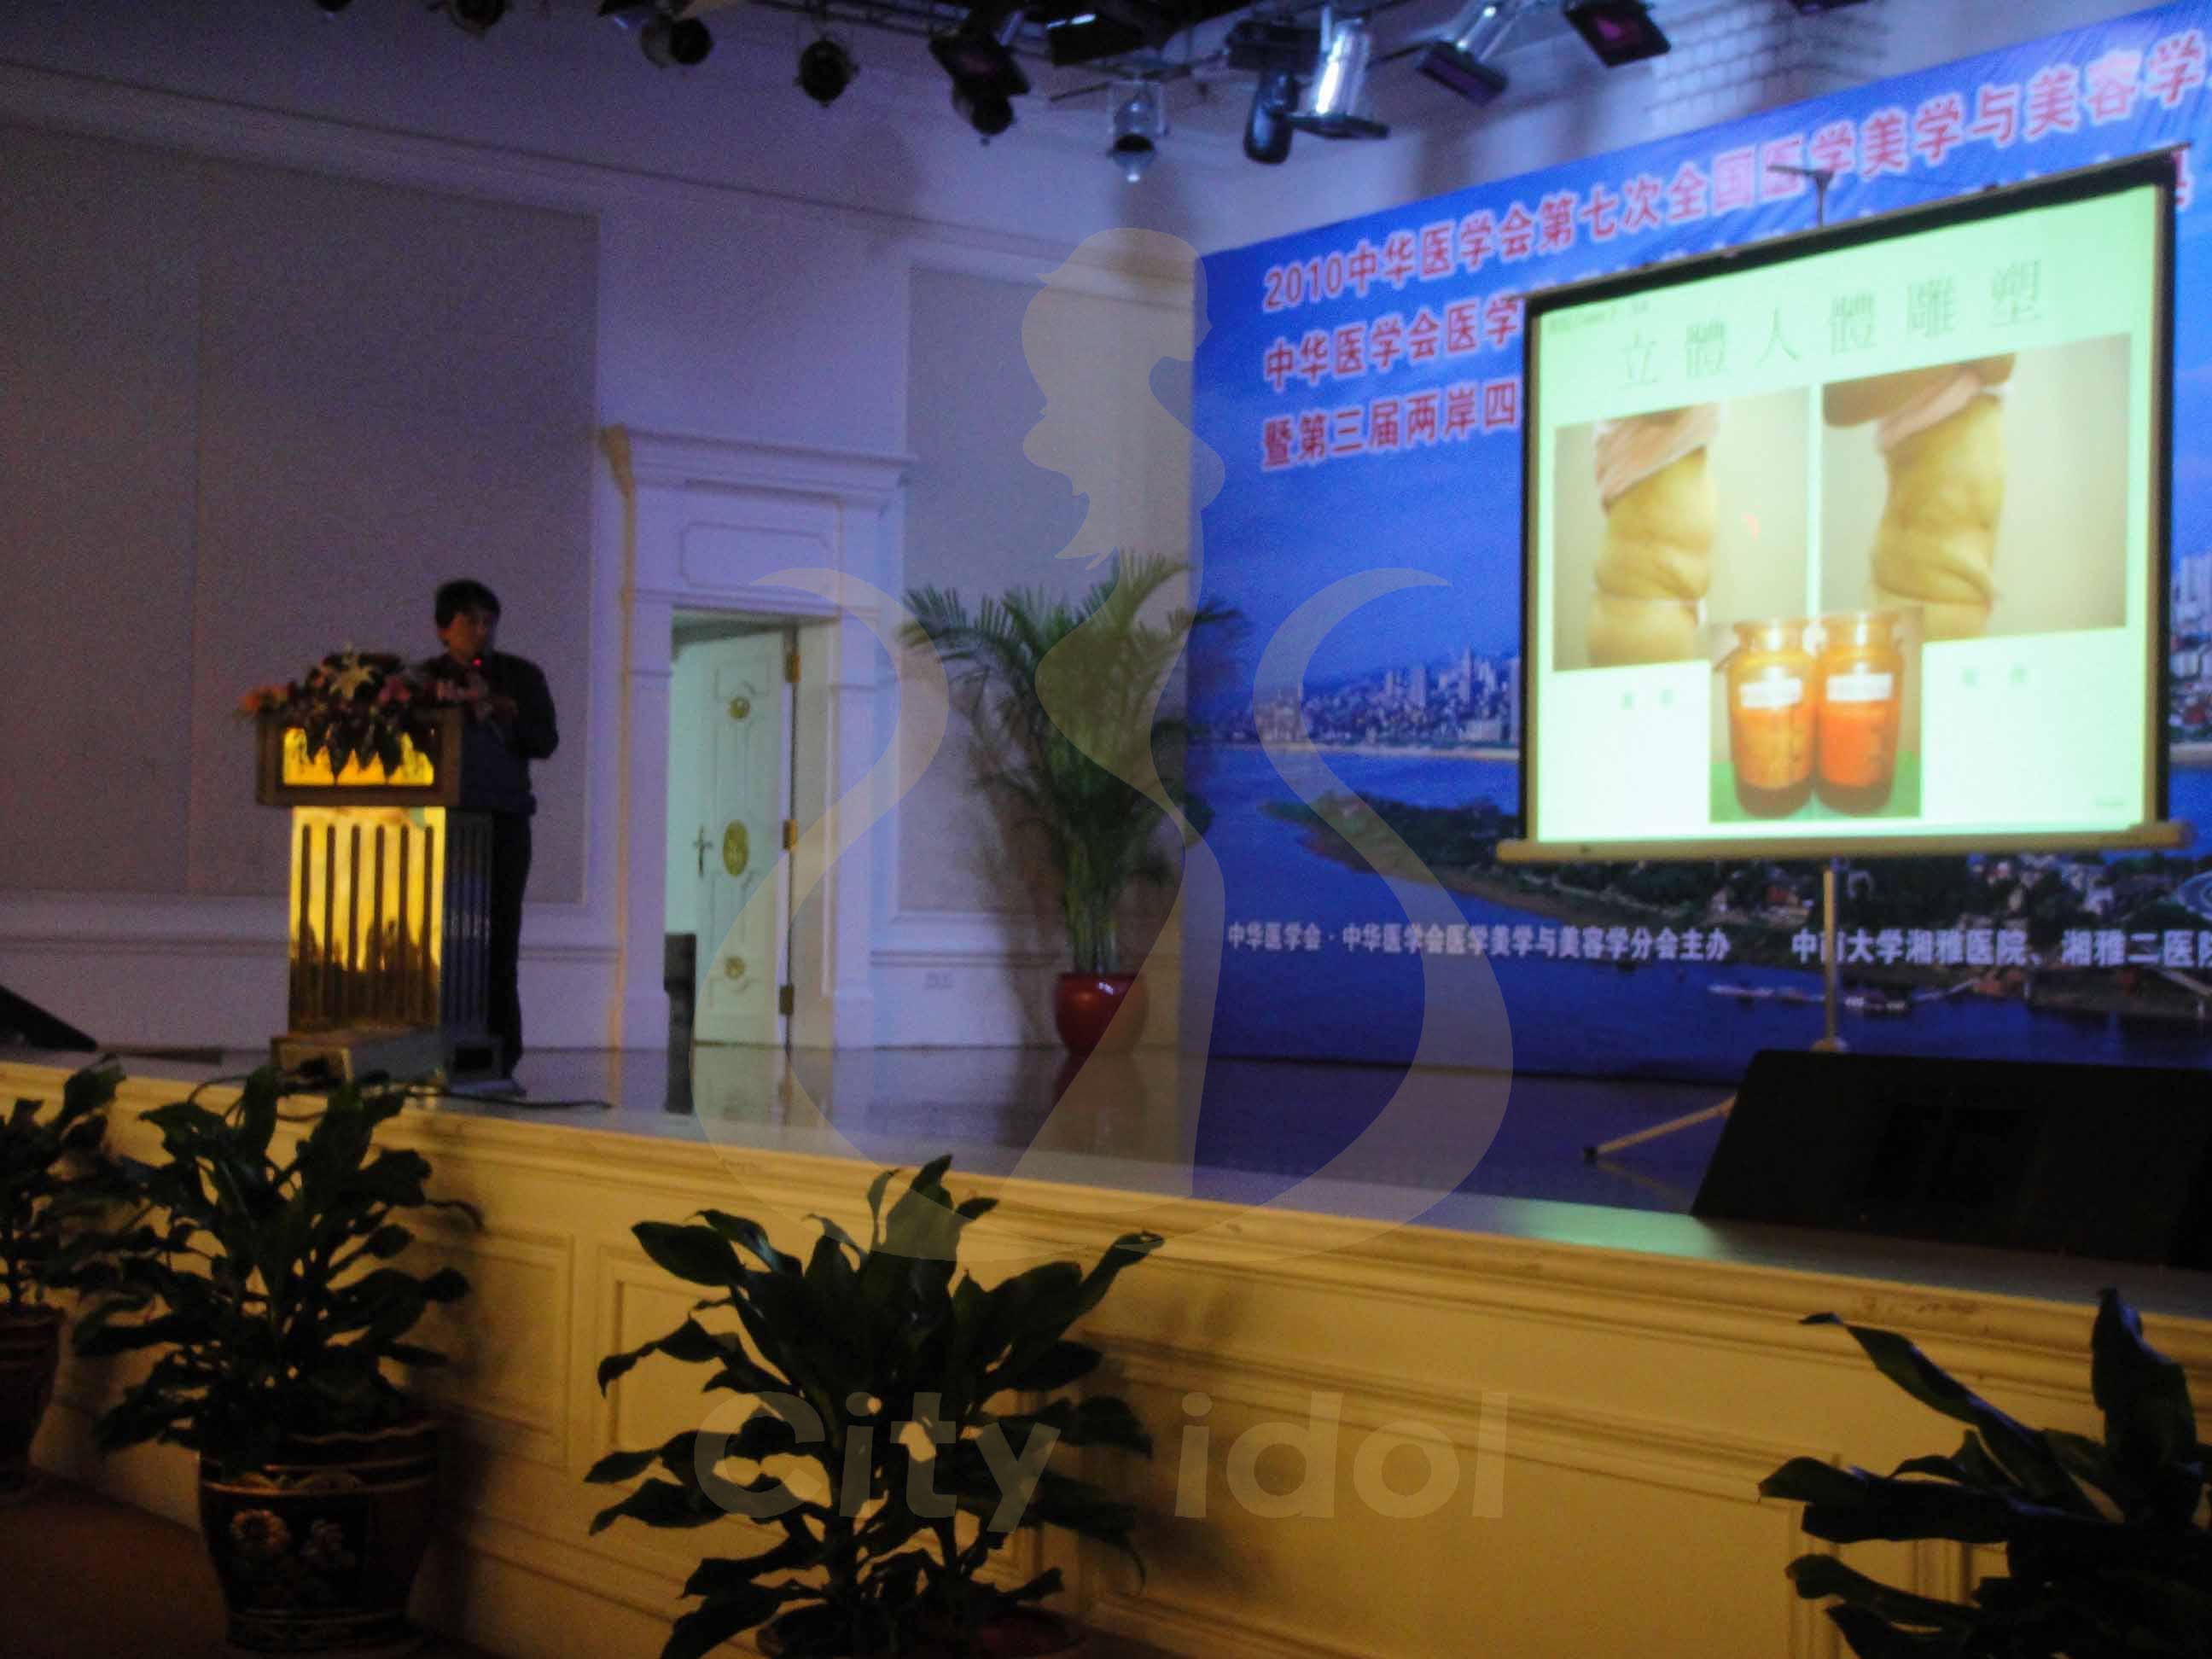 2010-06-05 互動式抽脂手術 - 中國長沙第三屆兩岸四地美容醫學學術論壇演講